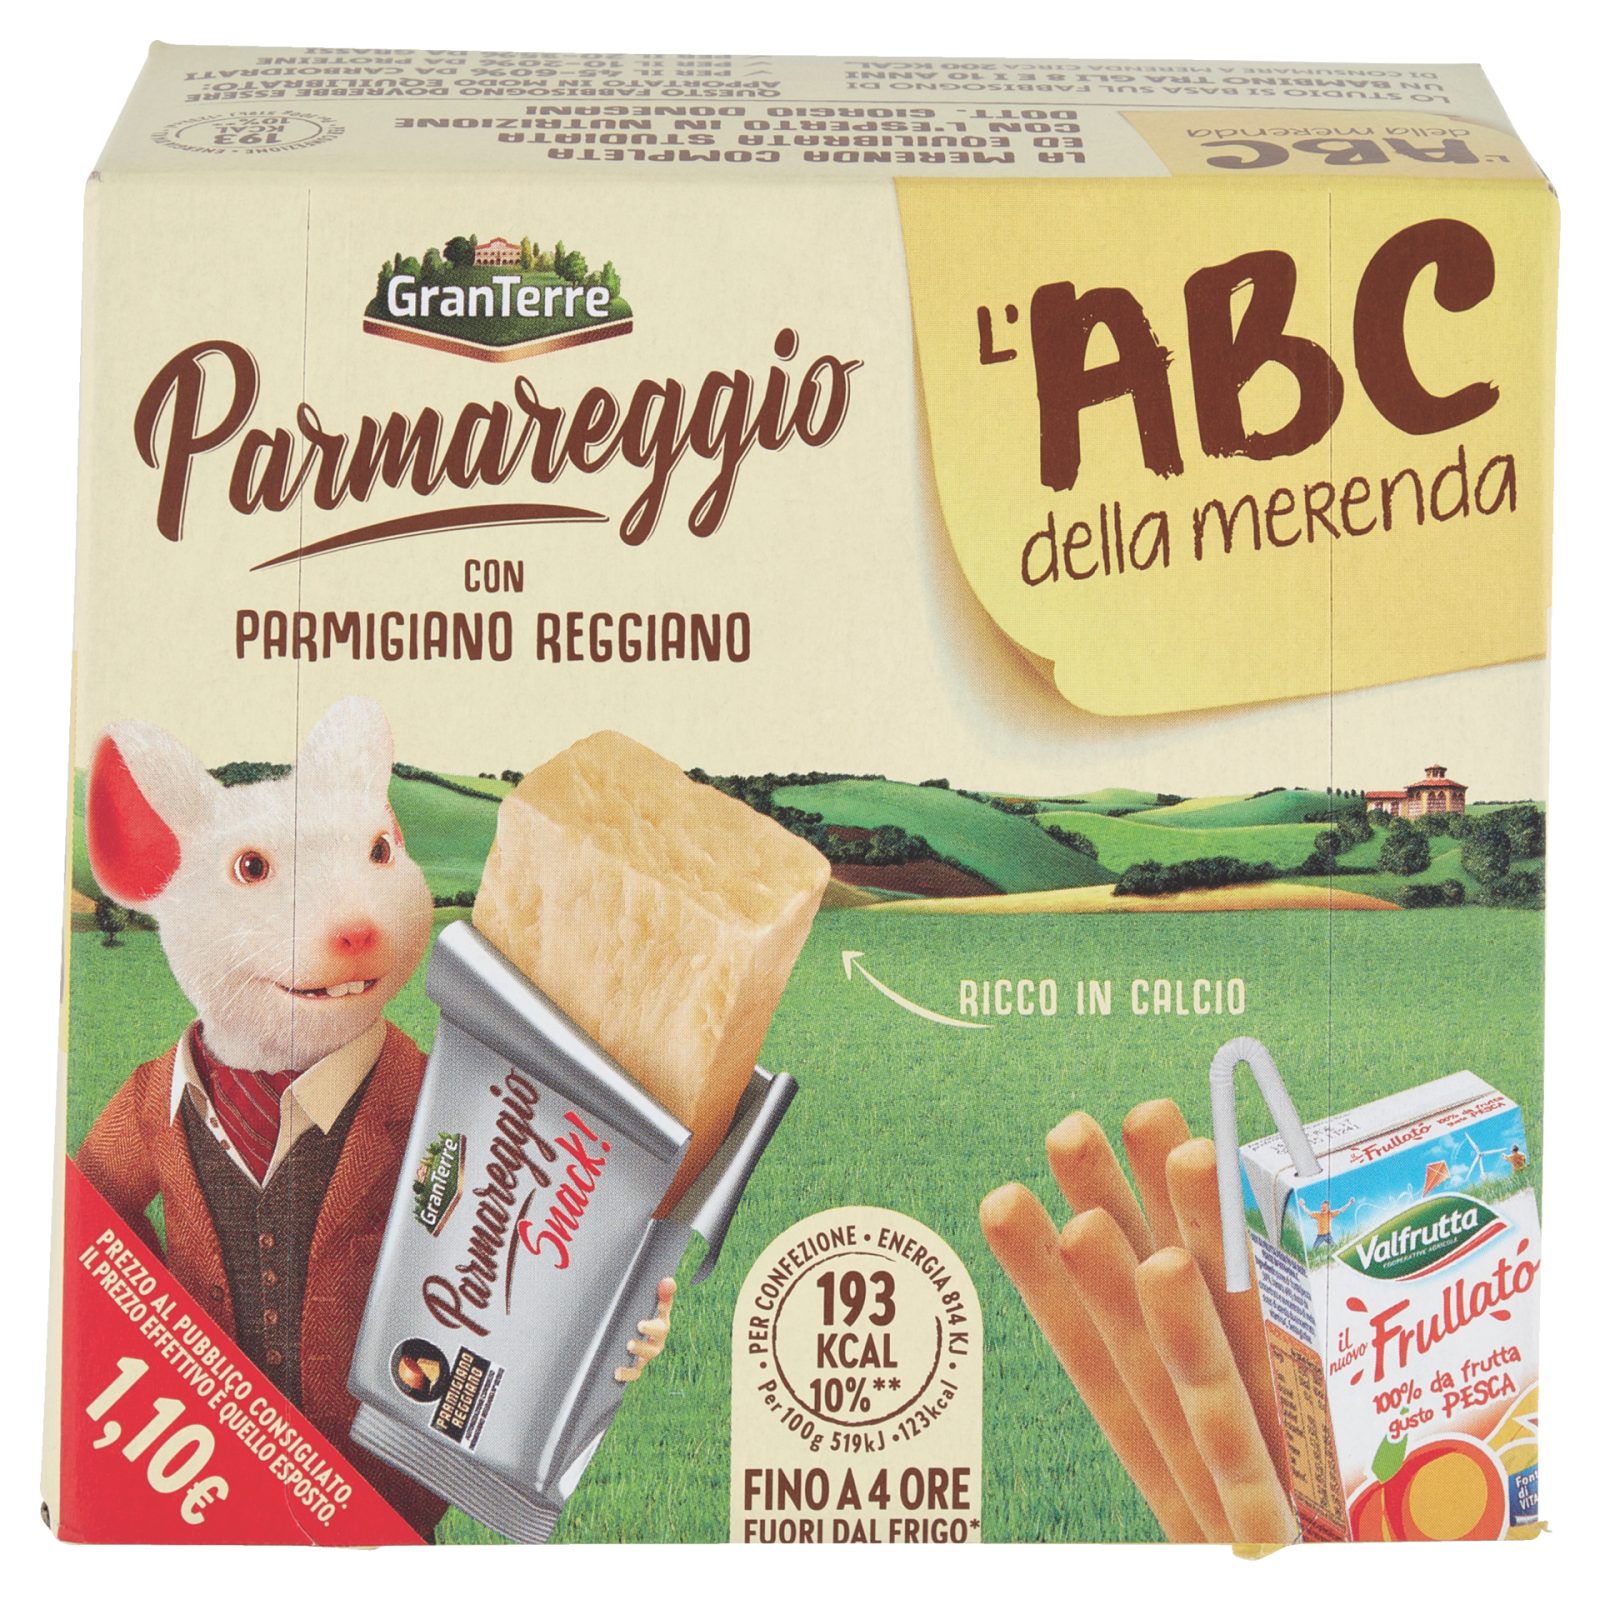 Snack Abc della merenda Parmareggio